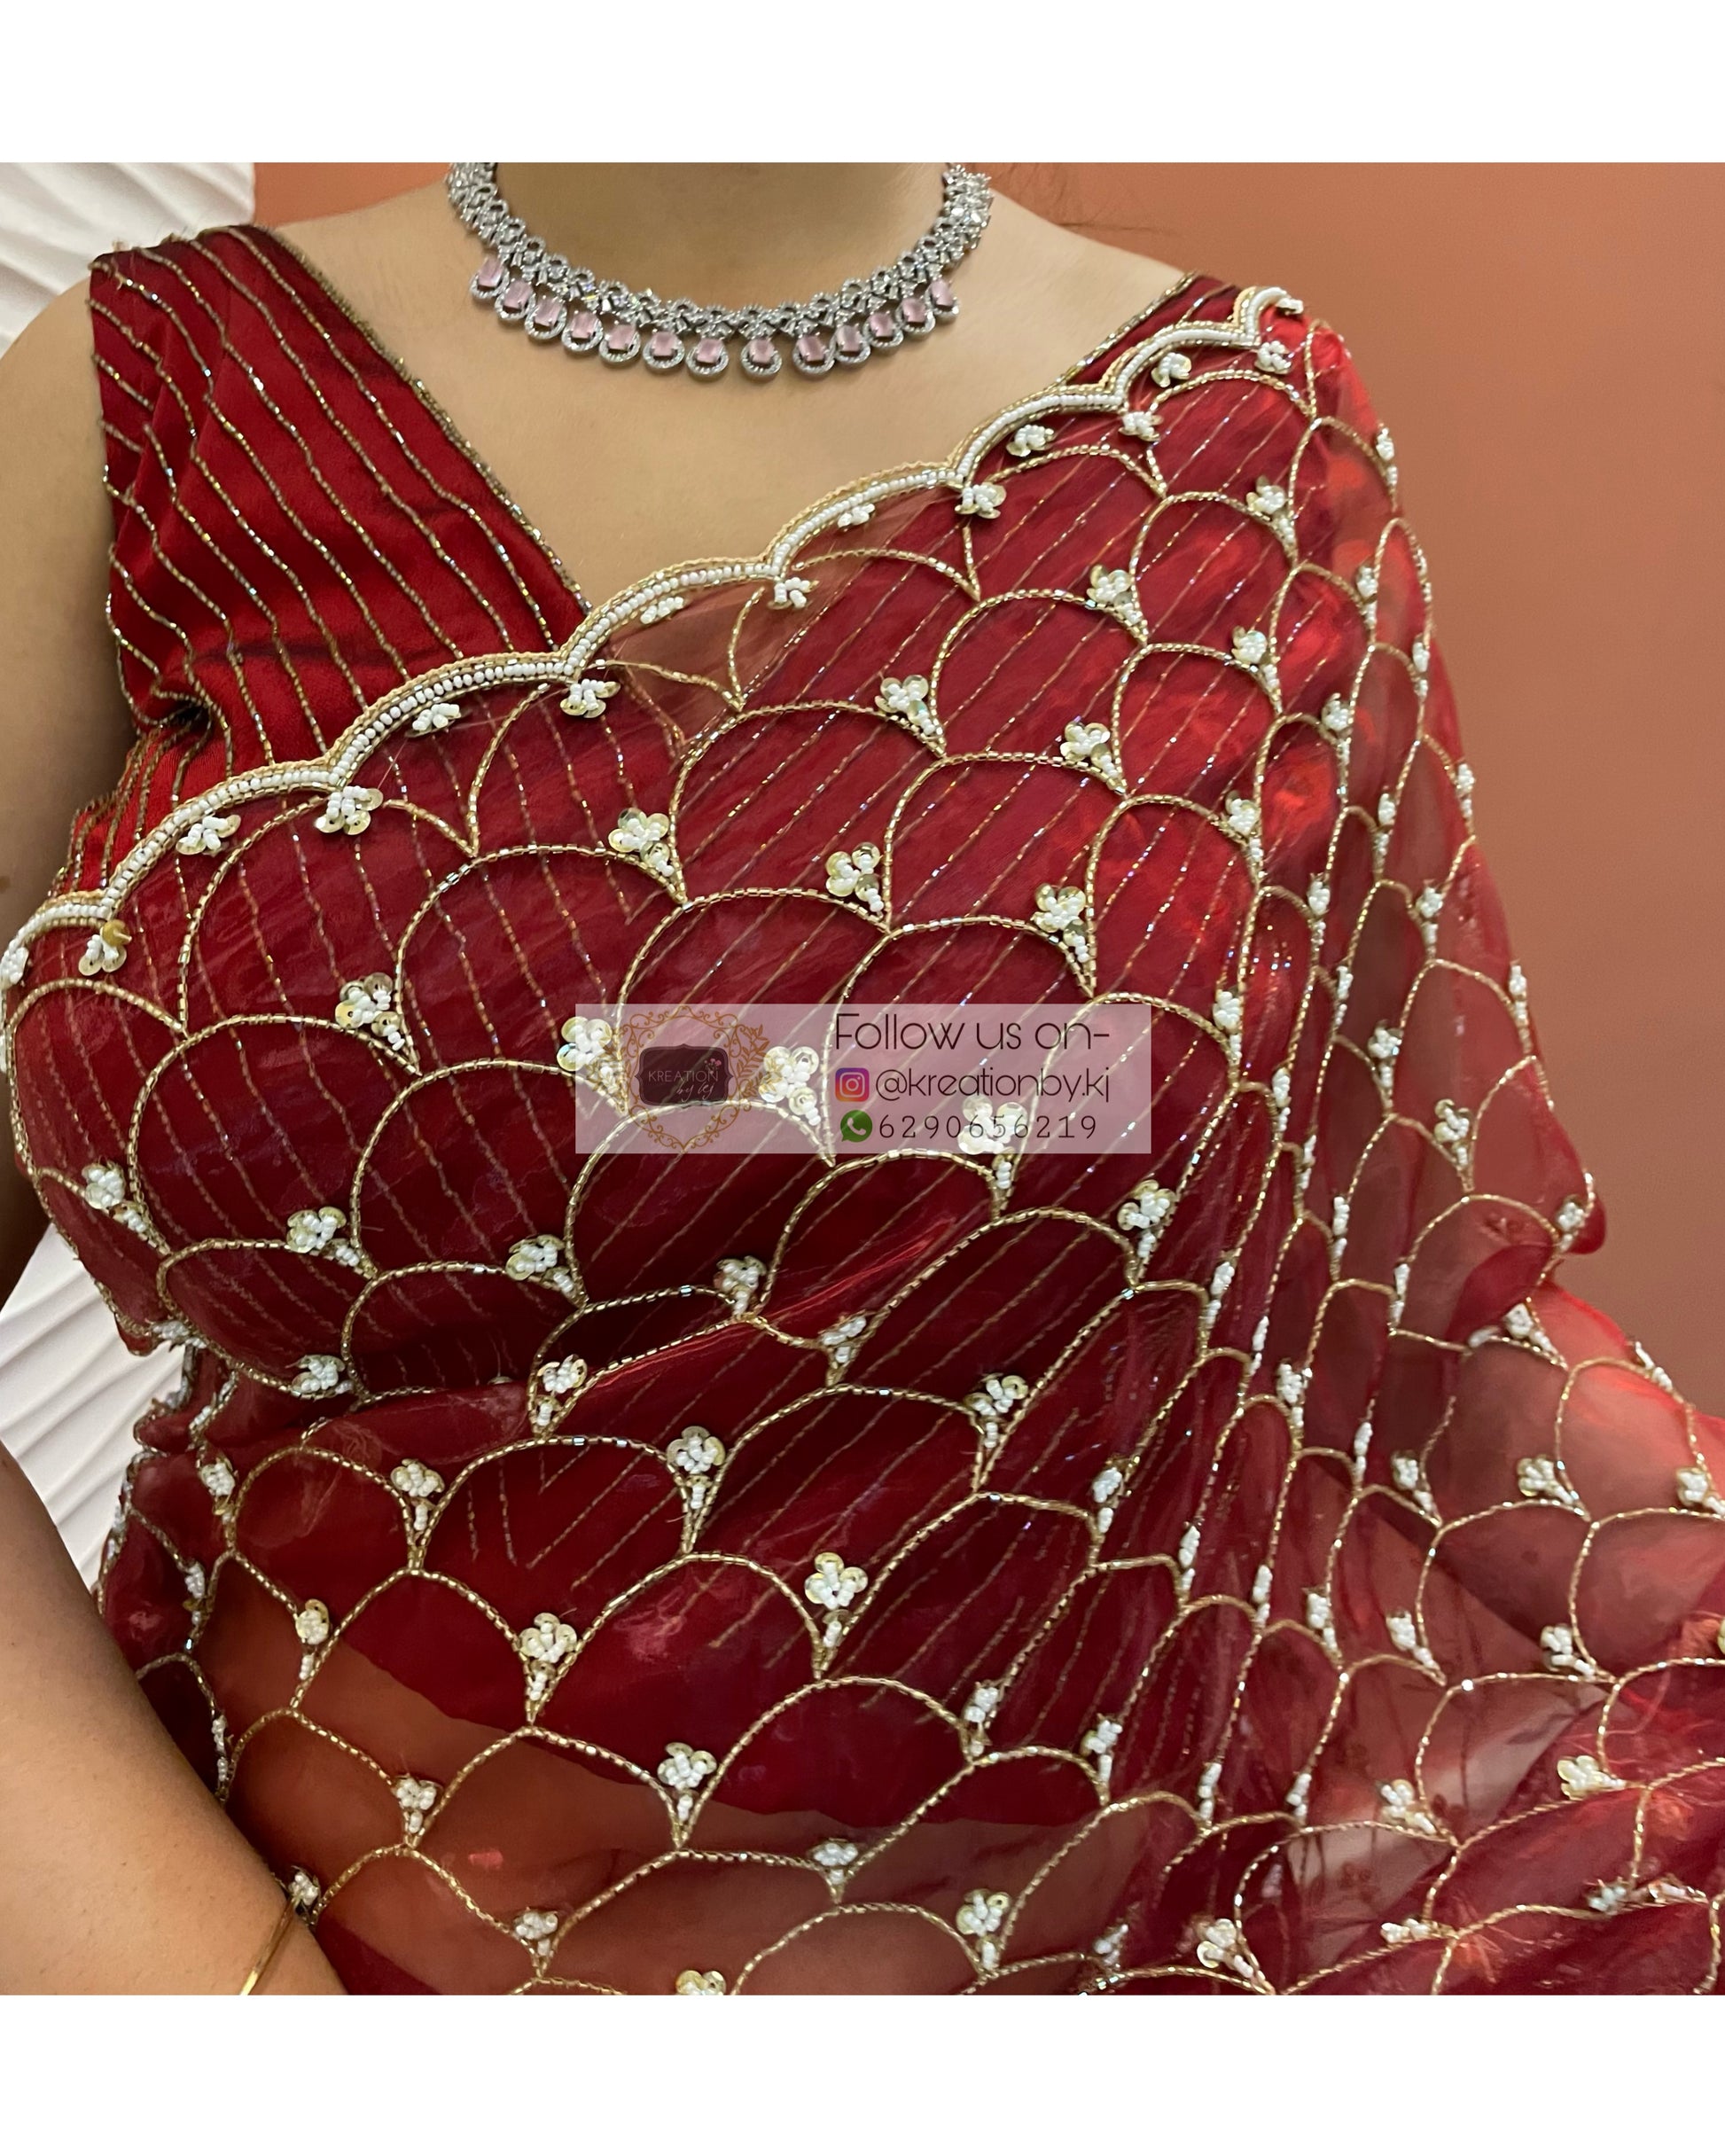 Red Glass Tissue Cutdana Mehraab Saree - kreationbykj